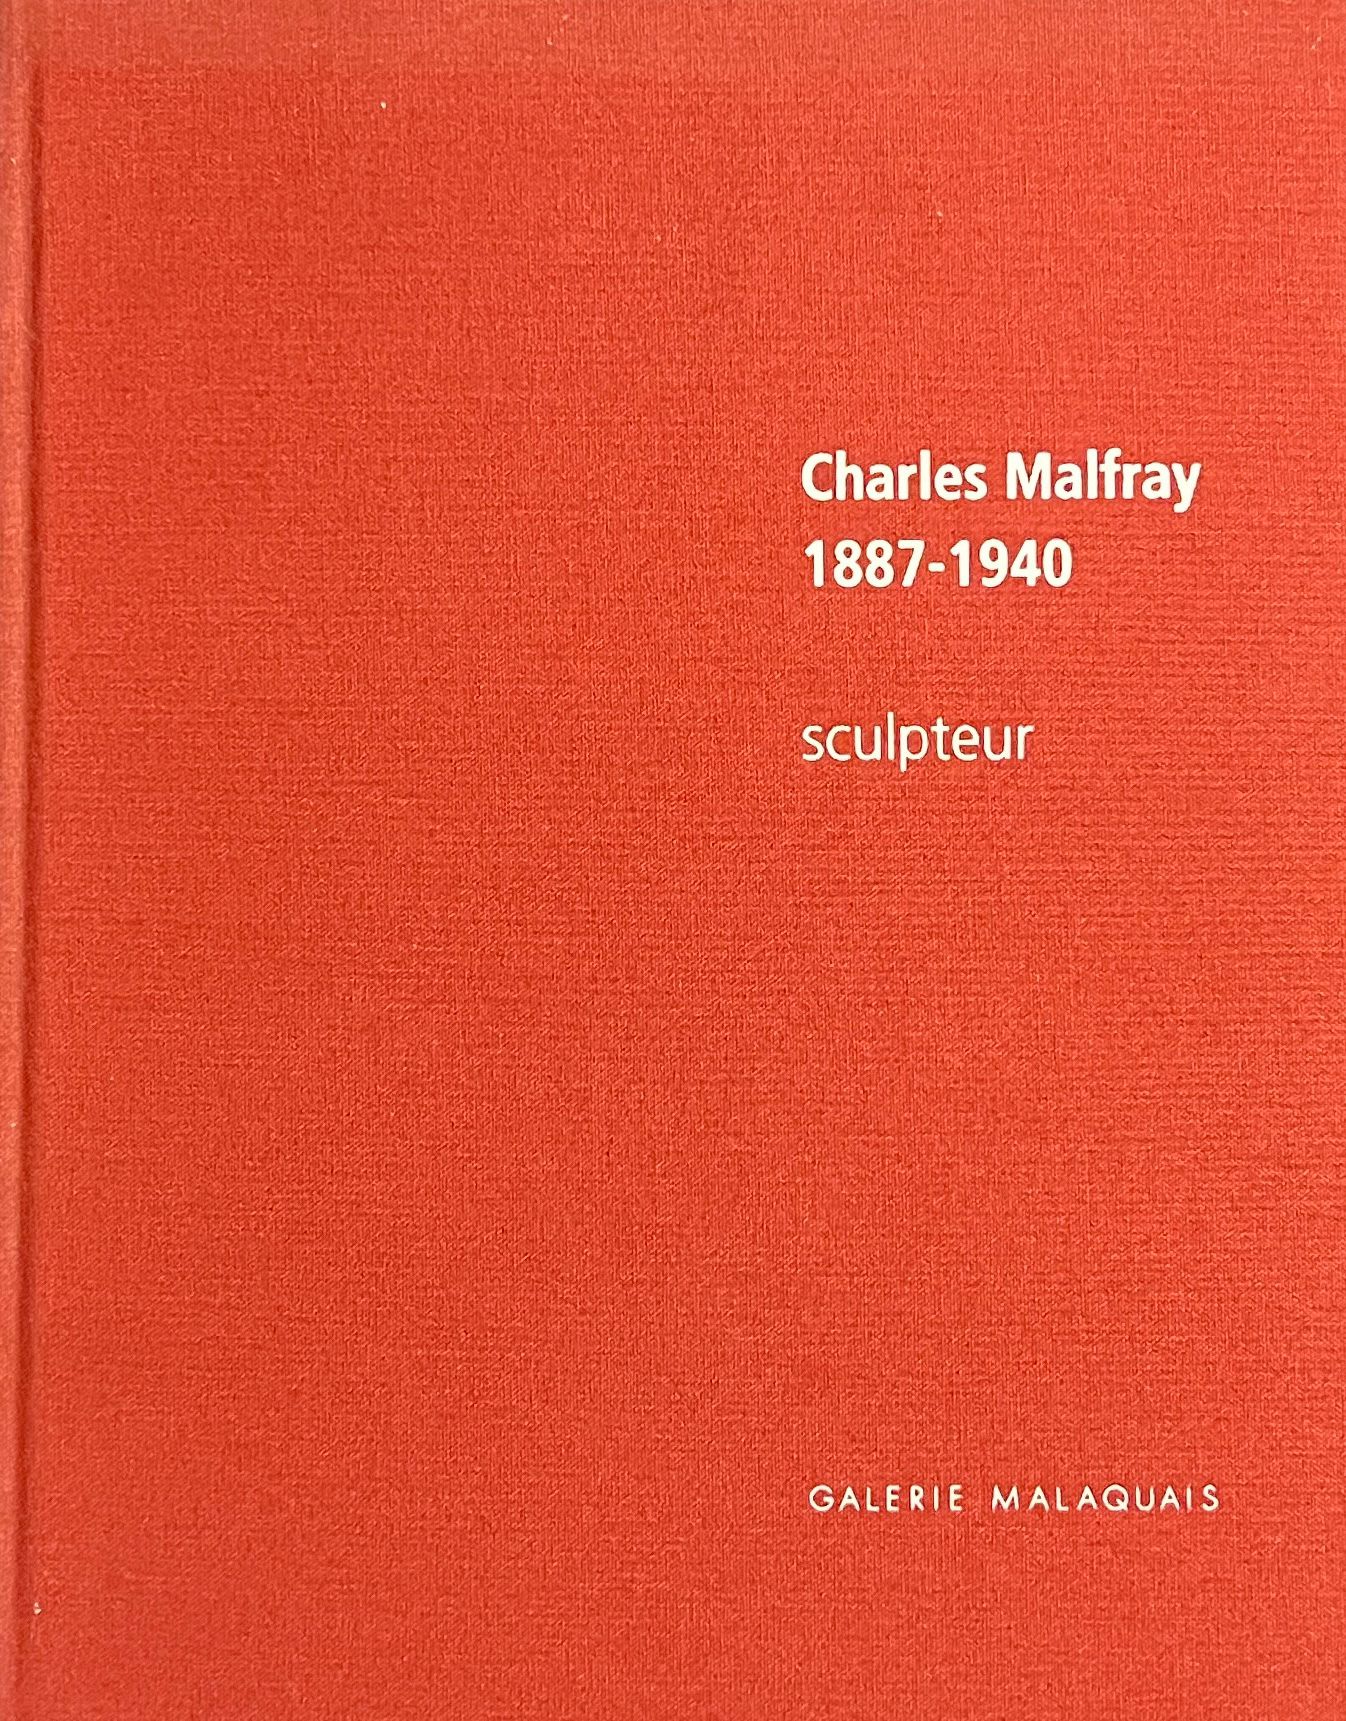 Null Charles Malfray 1887-1940 sculpteur, Paris, Galerie Malaquais, 2007